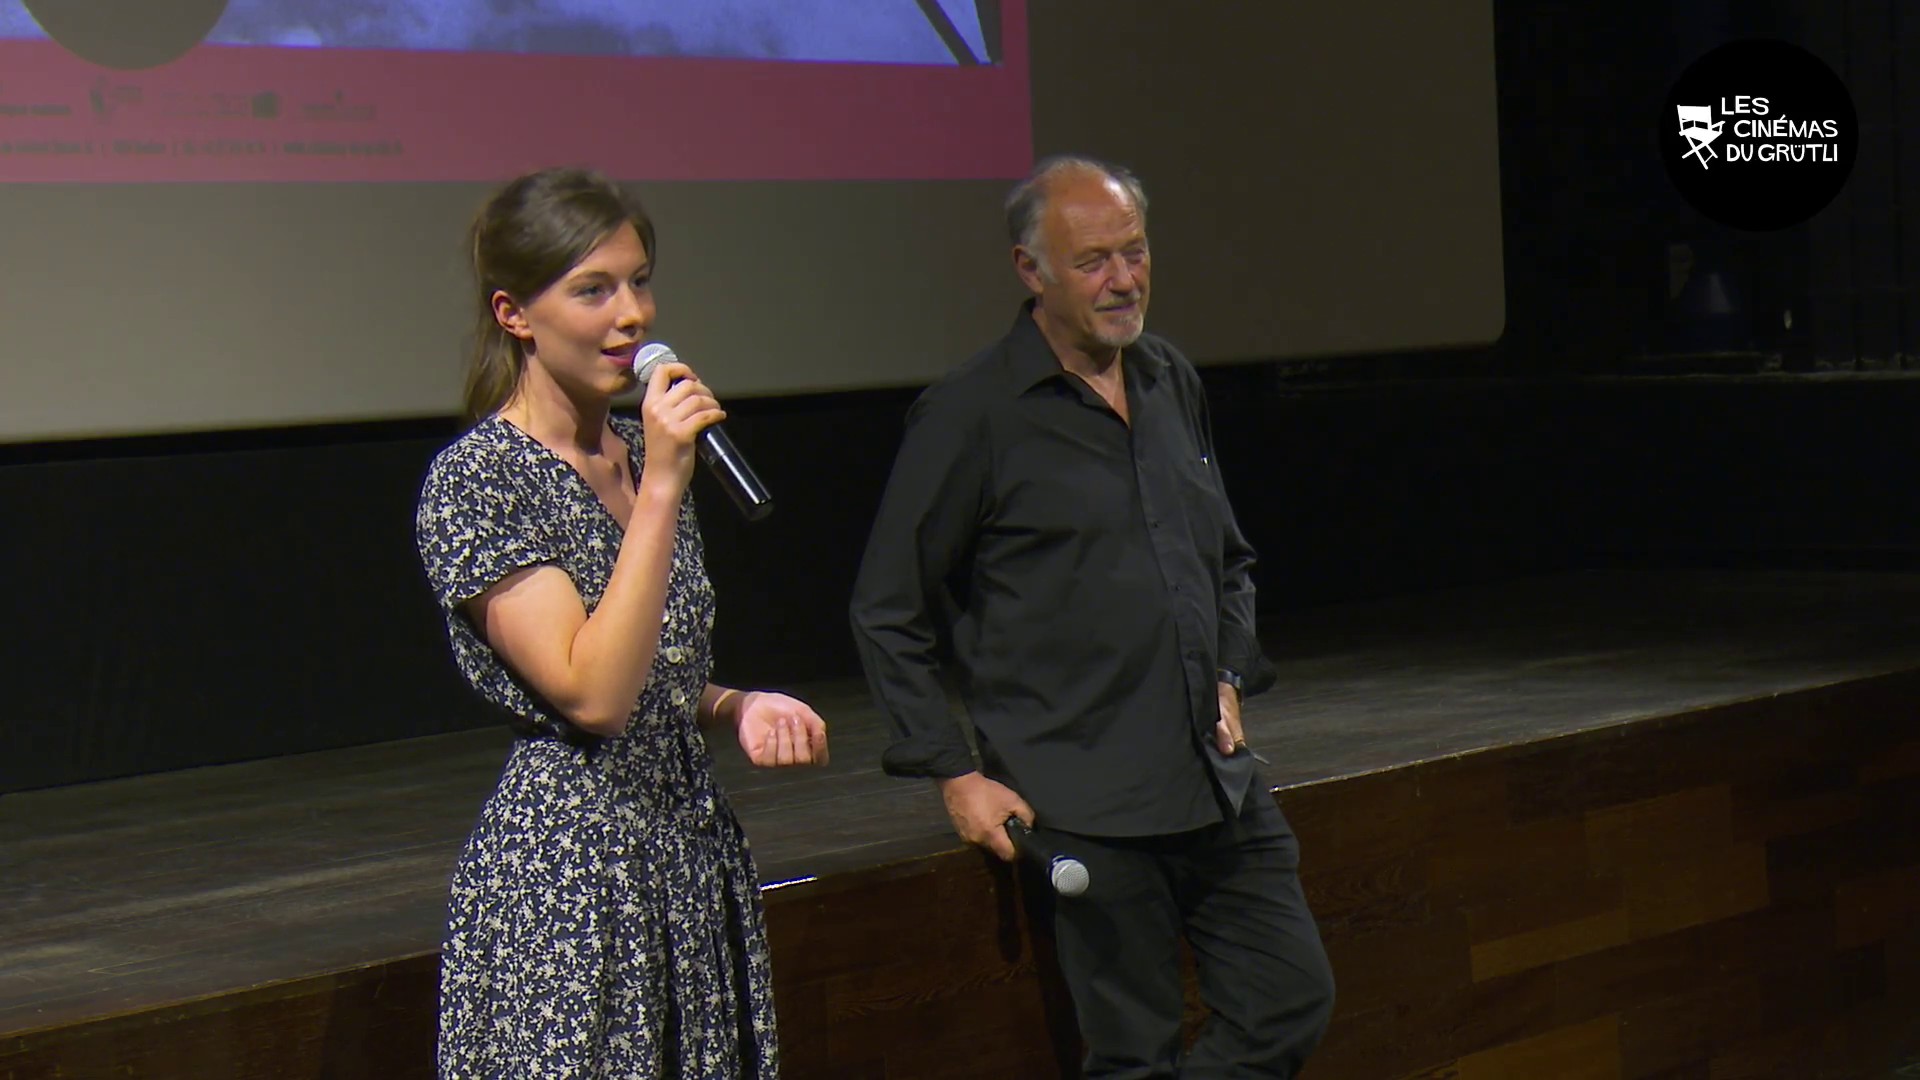 Rencontre avec Louise Chevillotte,
Les Cinémas du Grütli, Genève : Festival de Cannes 2017